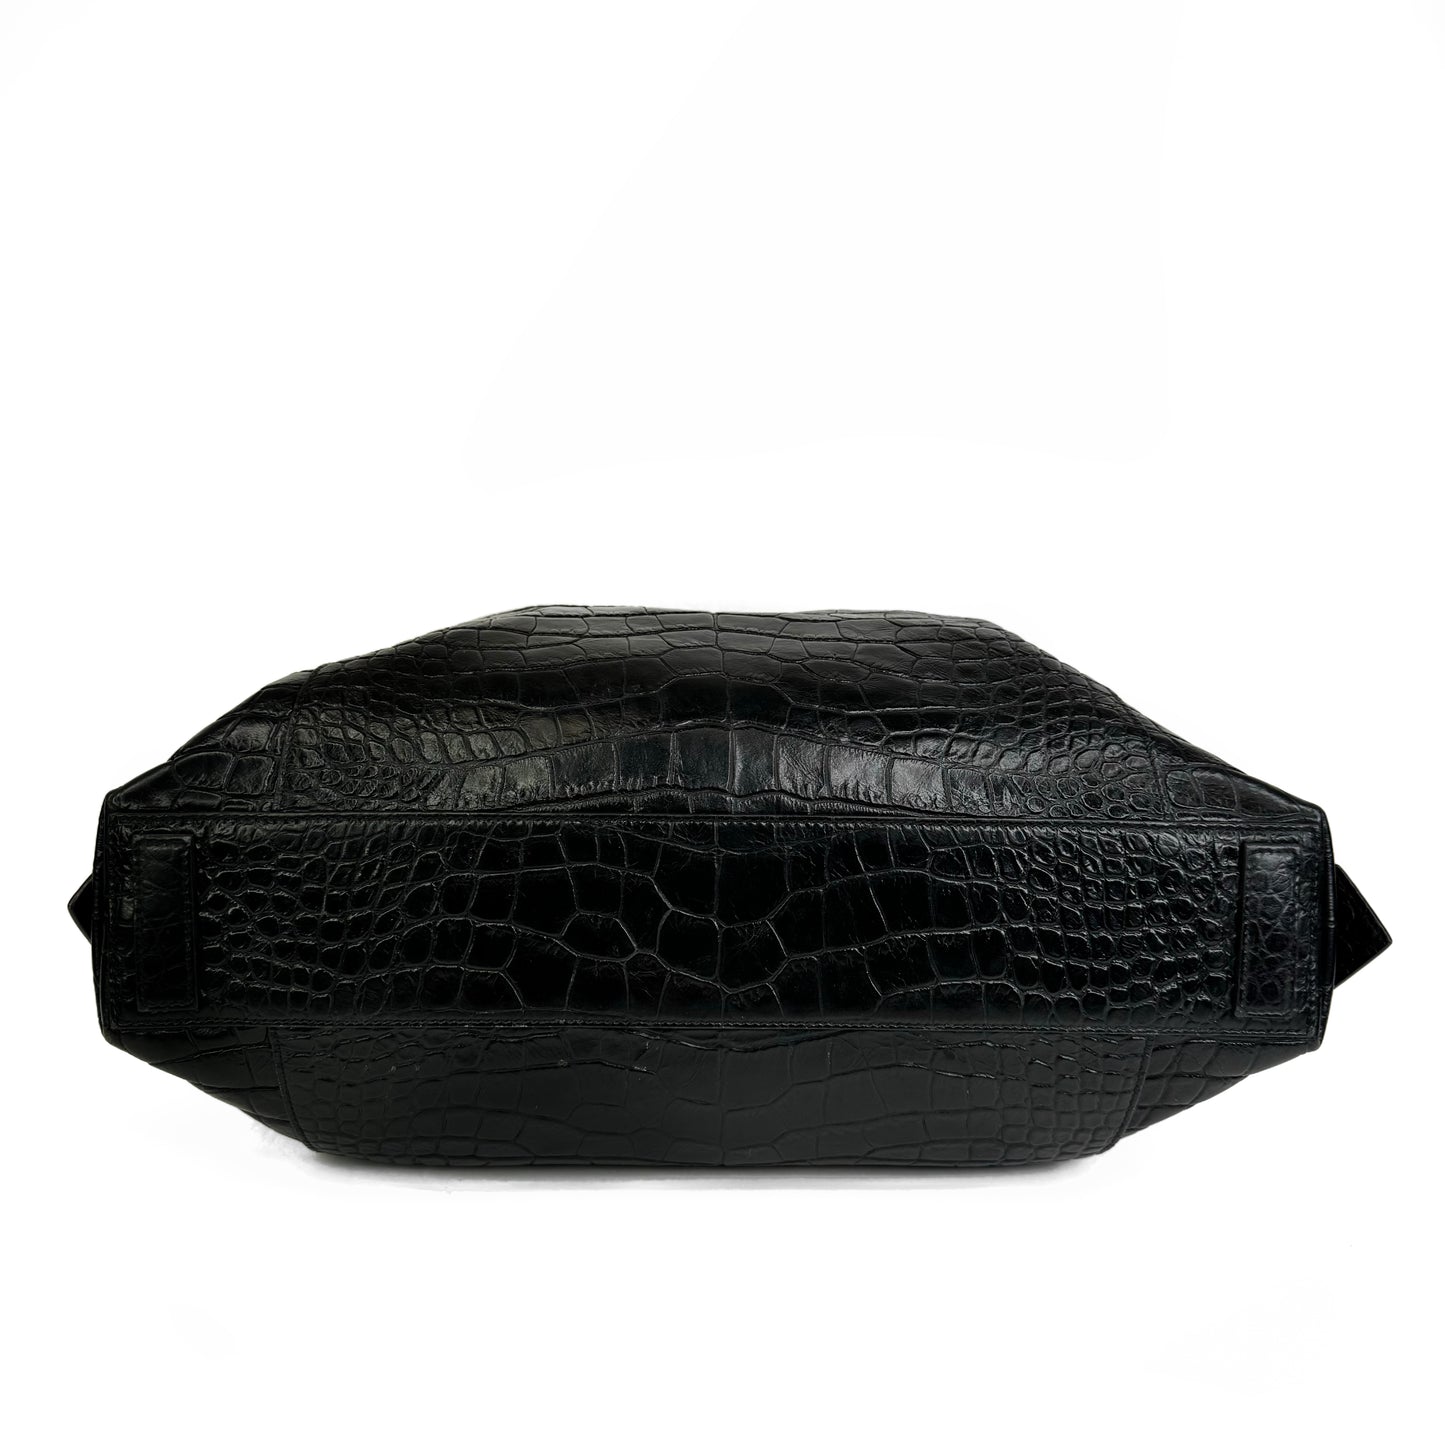 Givenchy Antigona Soft Croc Embossed Medium Bag